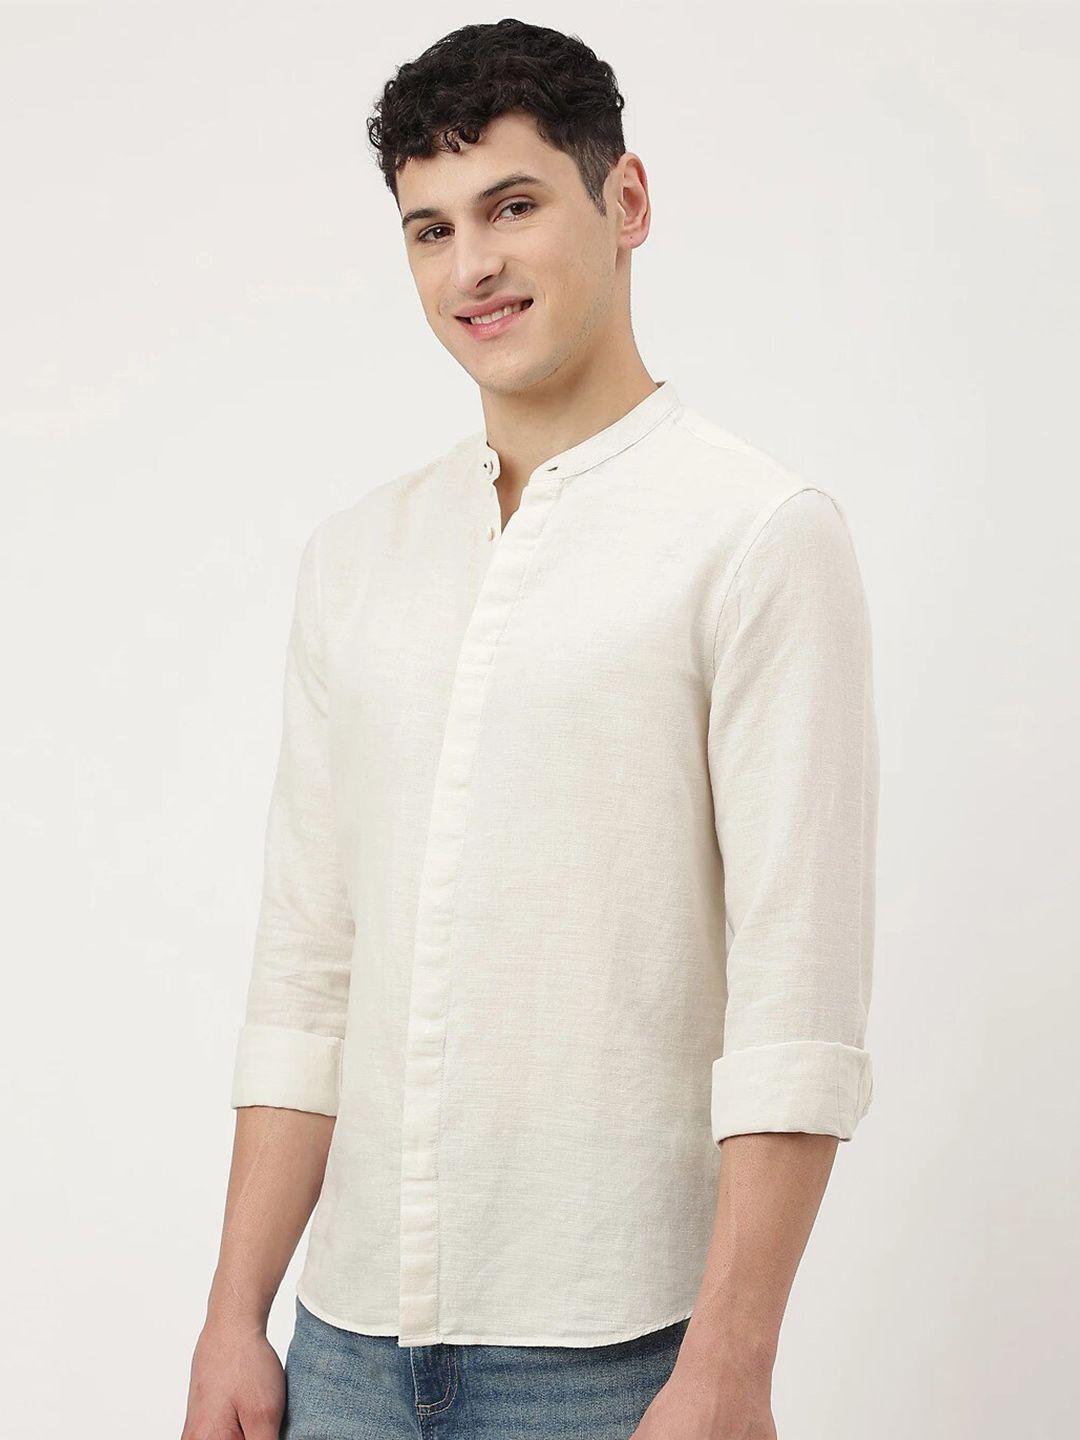 marks & spencer regular fit casual linen cotton shirt